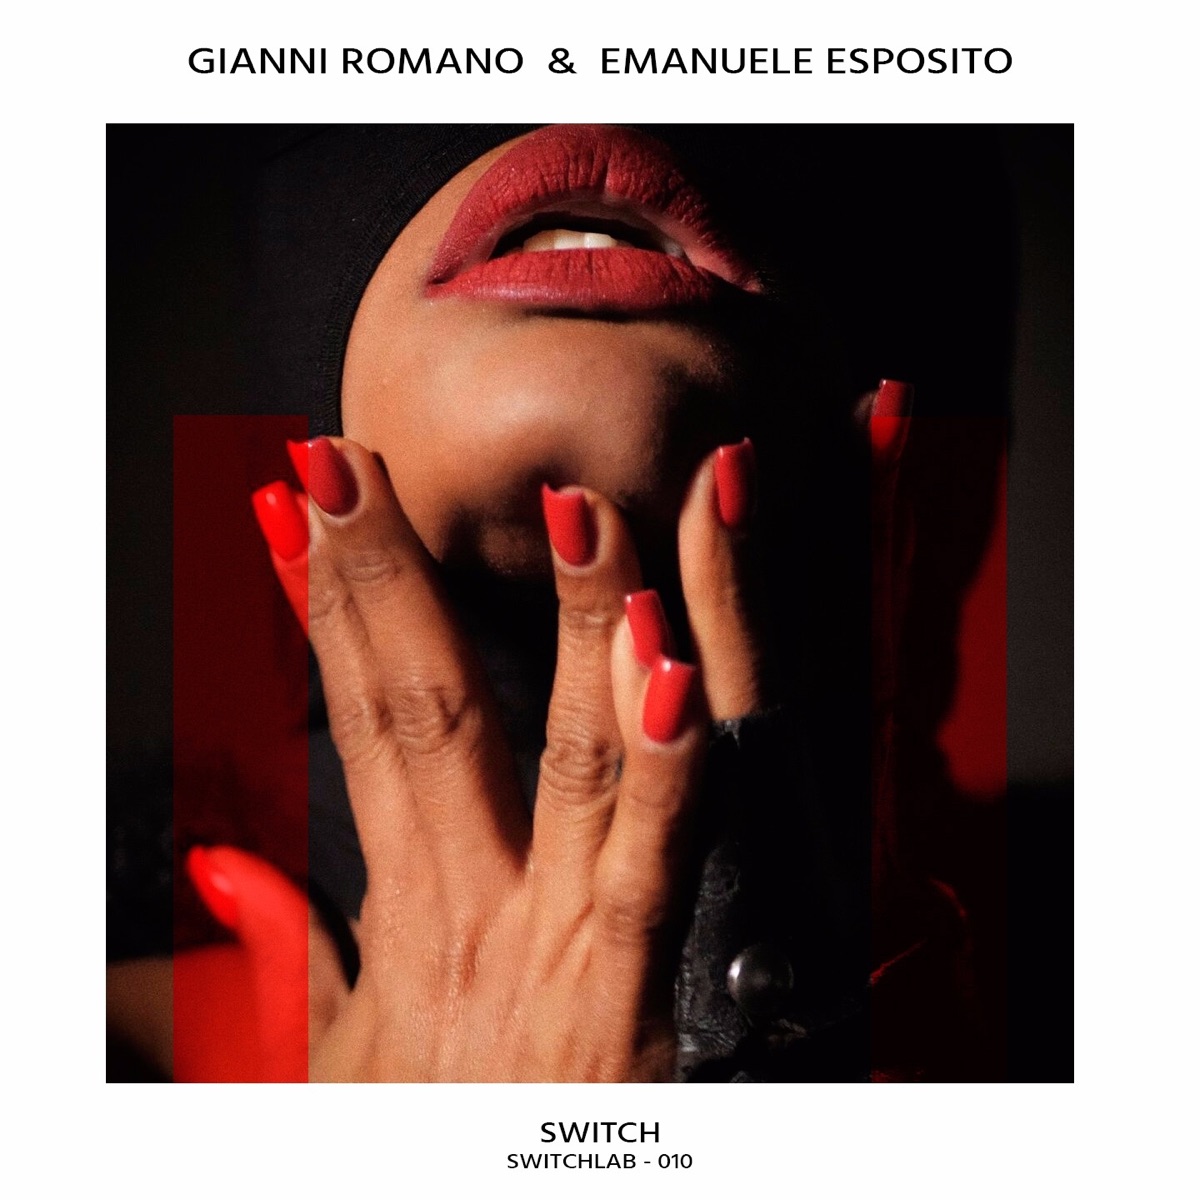 I Can't Wait - Single par Gianni Romano & Emanuele Esposito sur Apple Music